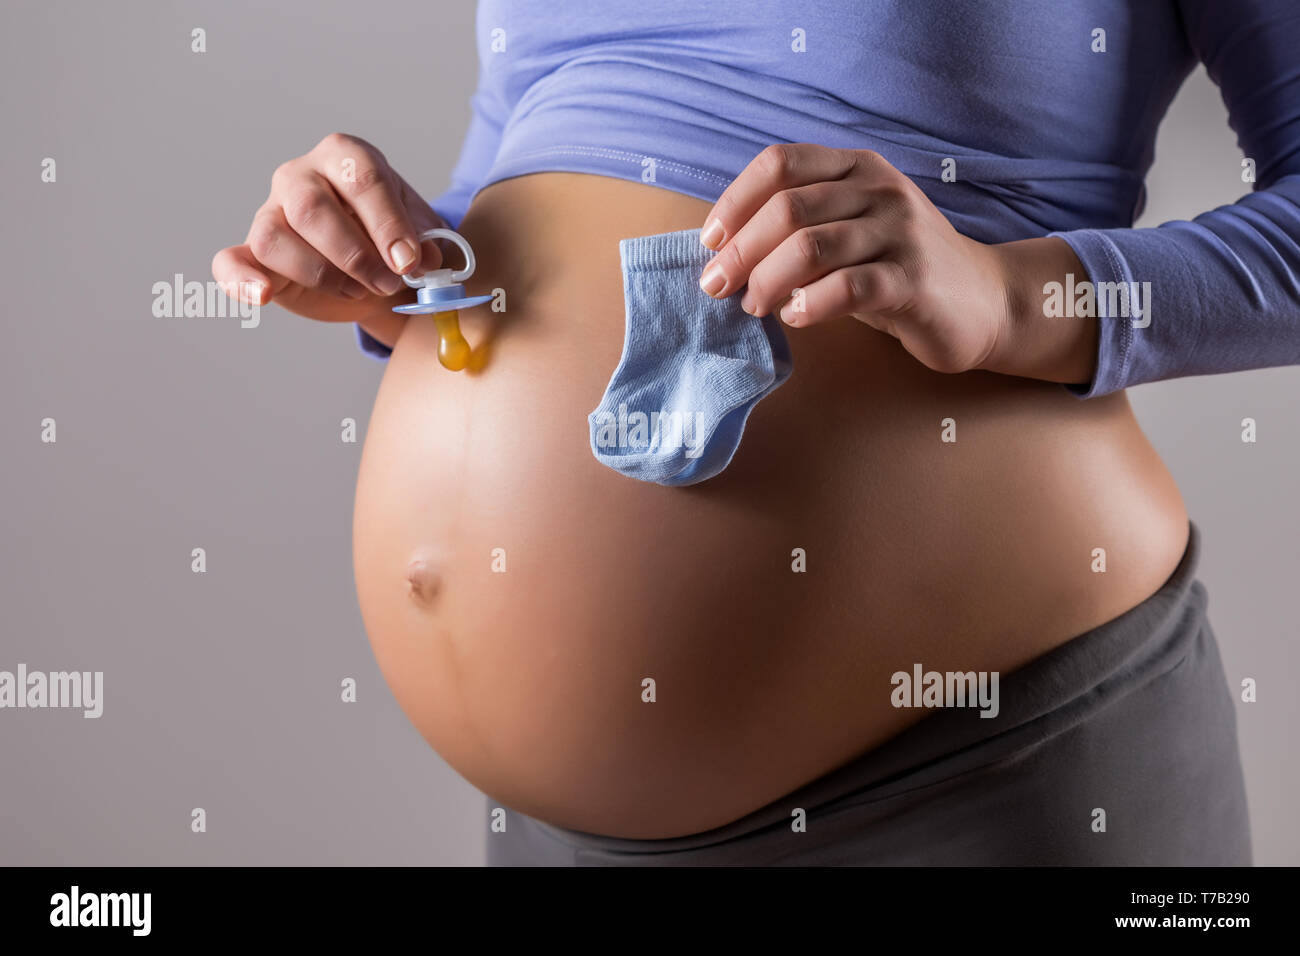 Immagine del ventre della donna incinta con tenendo il succhietto e calze per bambino su sfondo grigio. Foto Stock